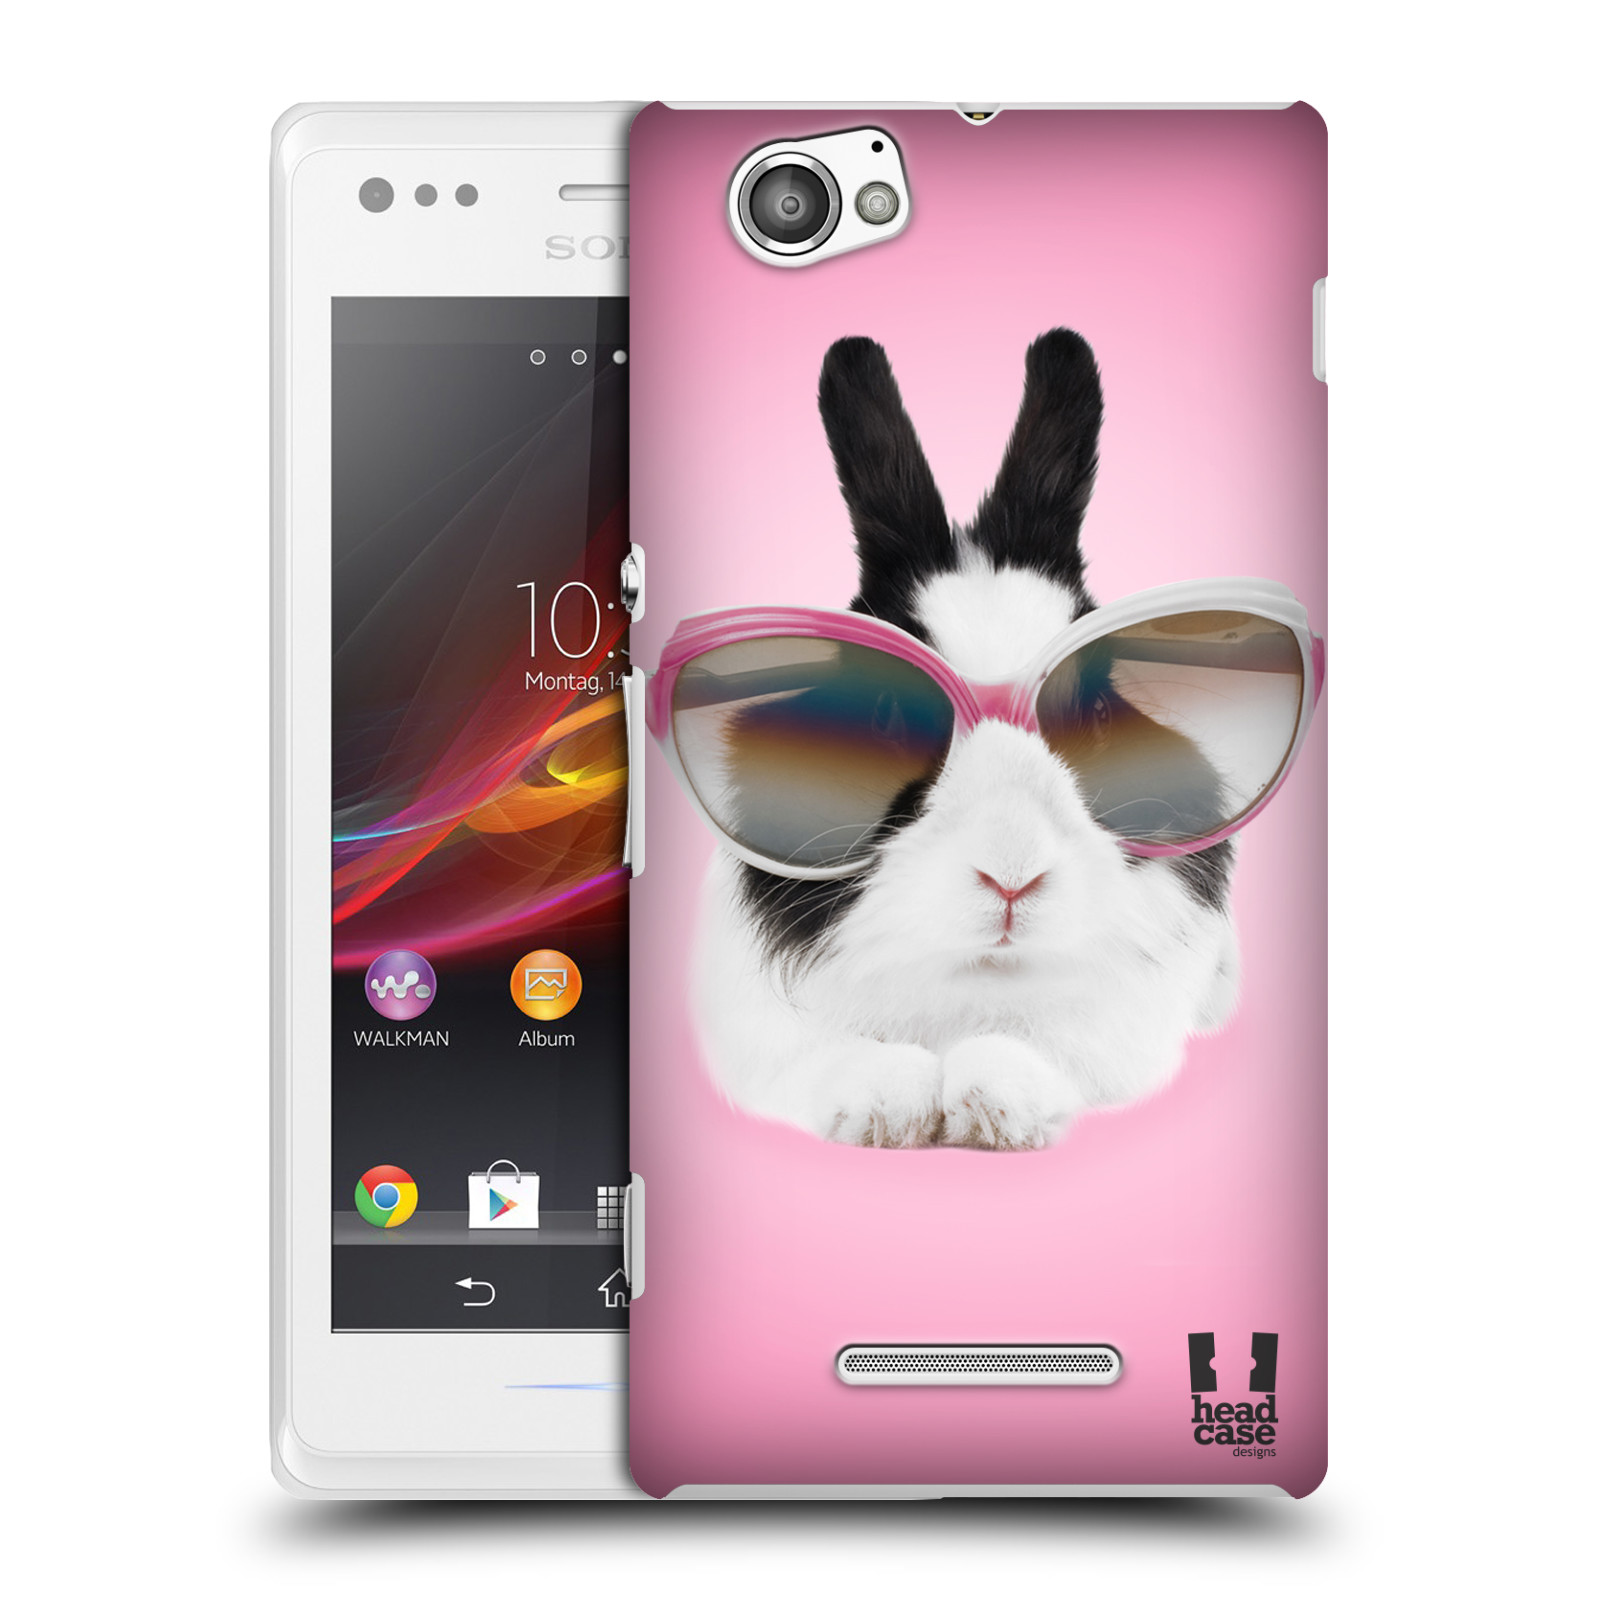 HEAD CASE plastový obal na mobil Sony Xperia M vzor Legrační zvířátka roztomilý králíček s brýlemi růžová